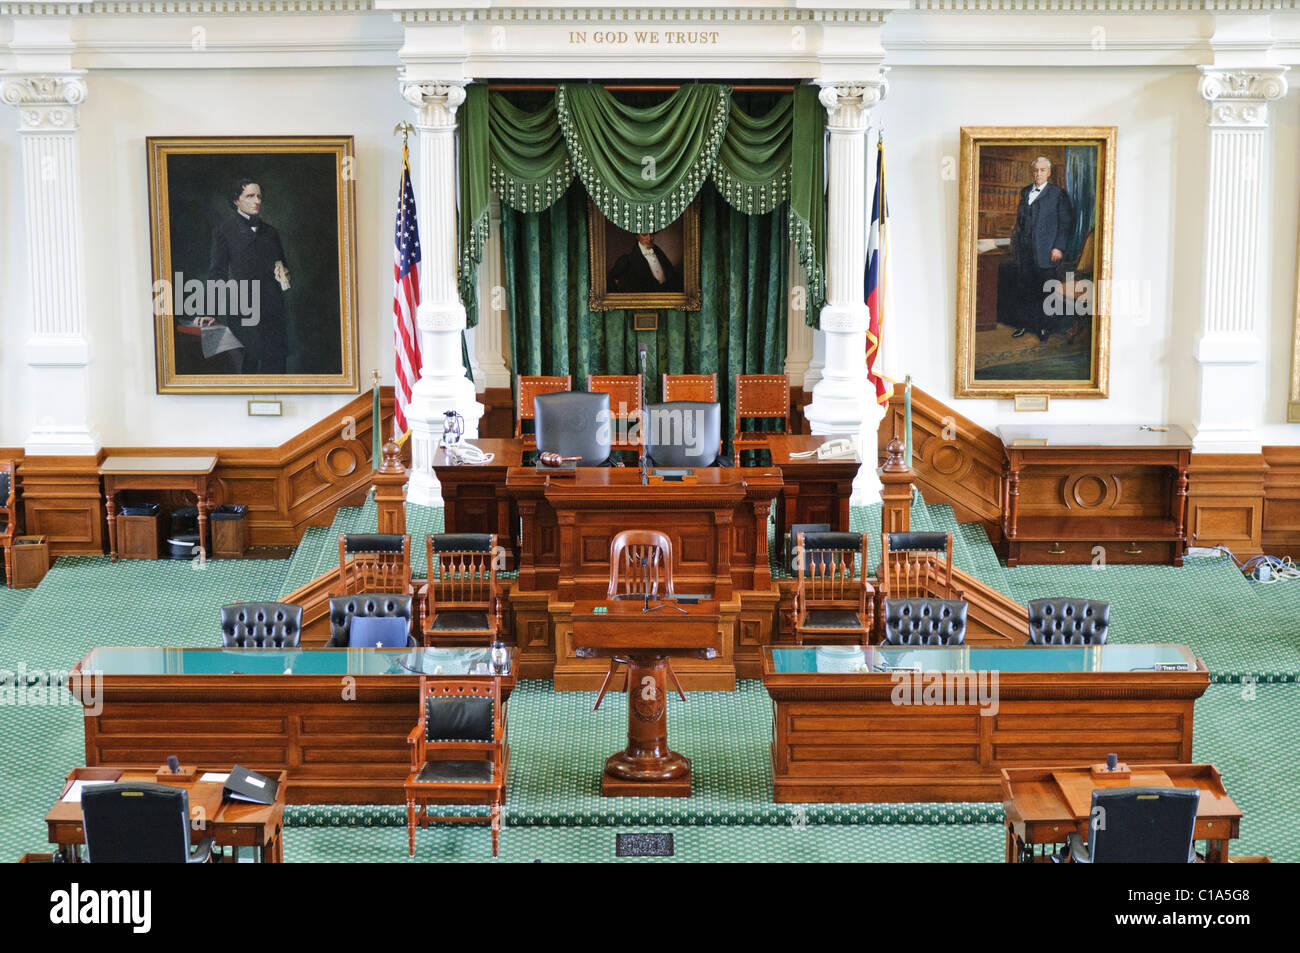 AUSTIN, Texas - Innenraum der Senat Kammer der Gesetzgebung des Staates Texas in der Texas State Captiol in Austin, Texas. Der Senat besteht aus 31 Mitgliedern. Stockfoto